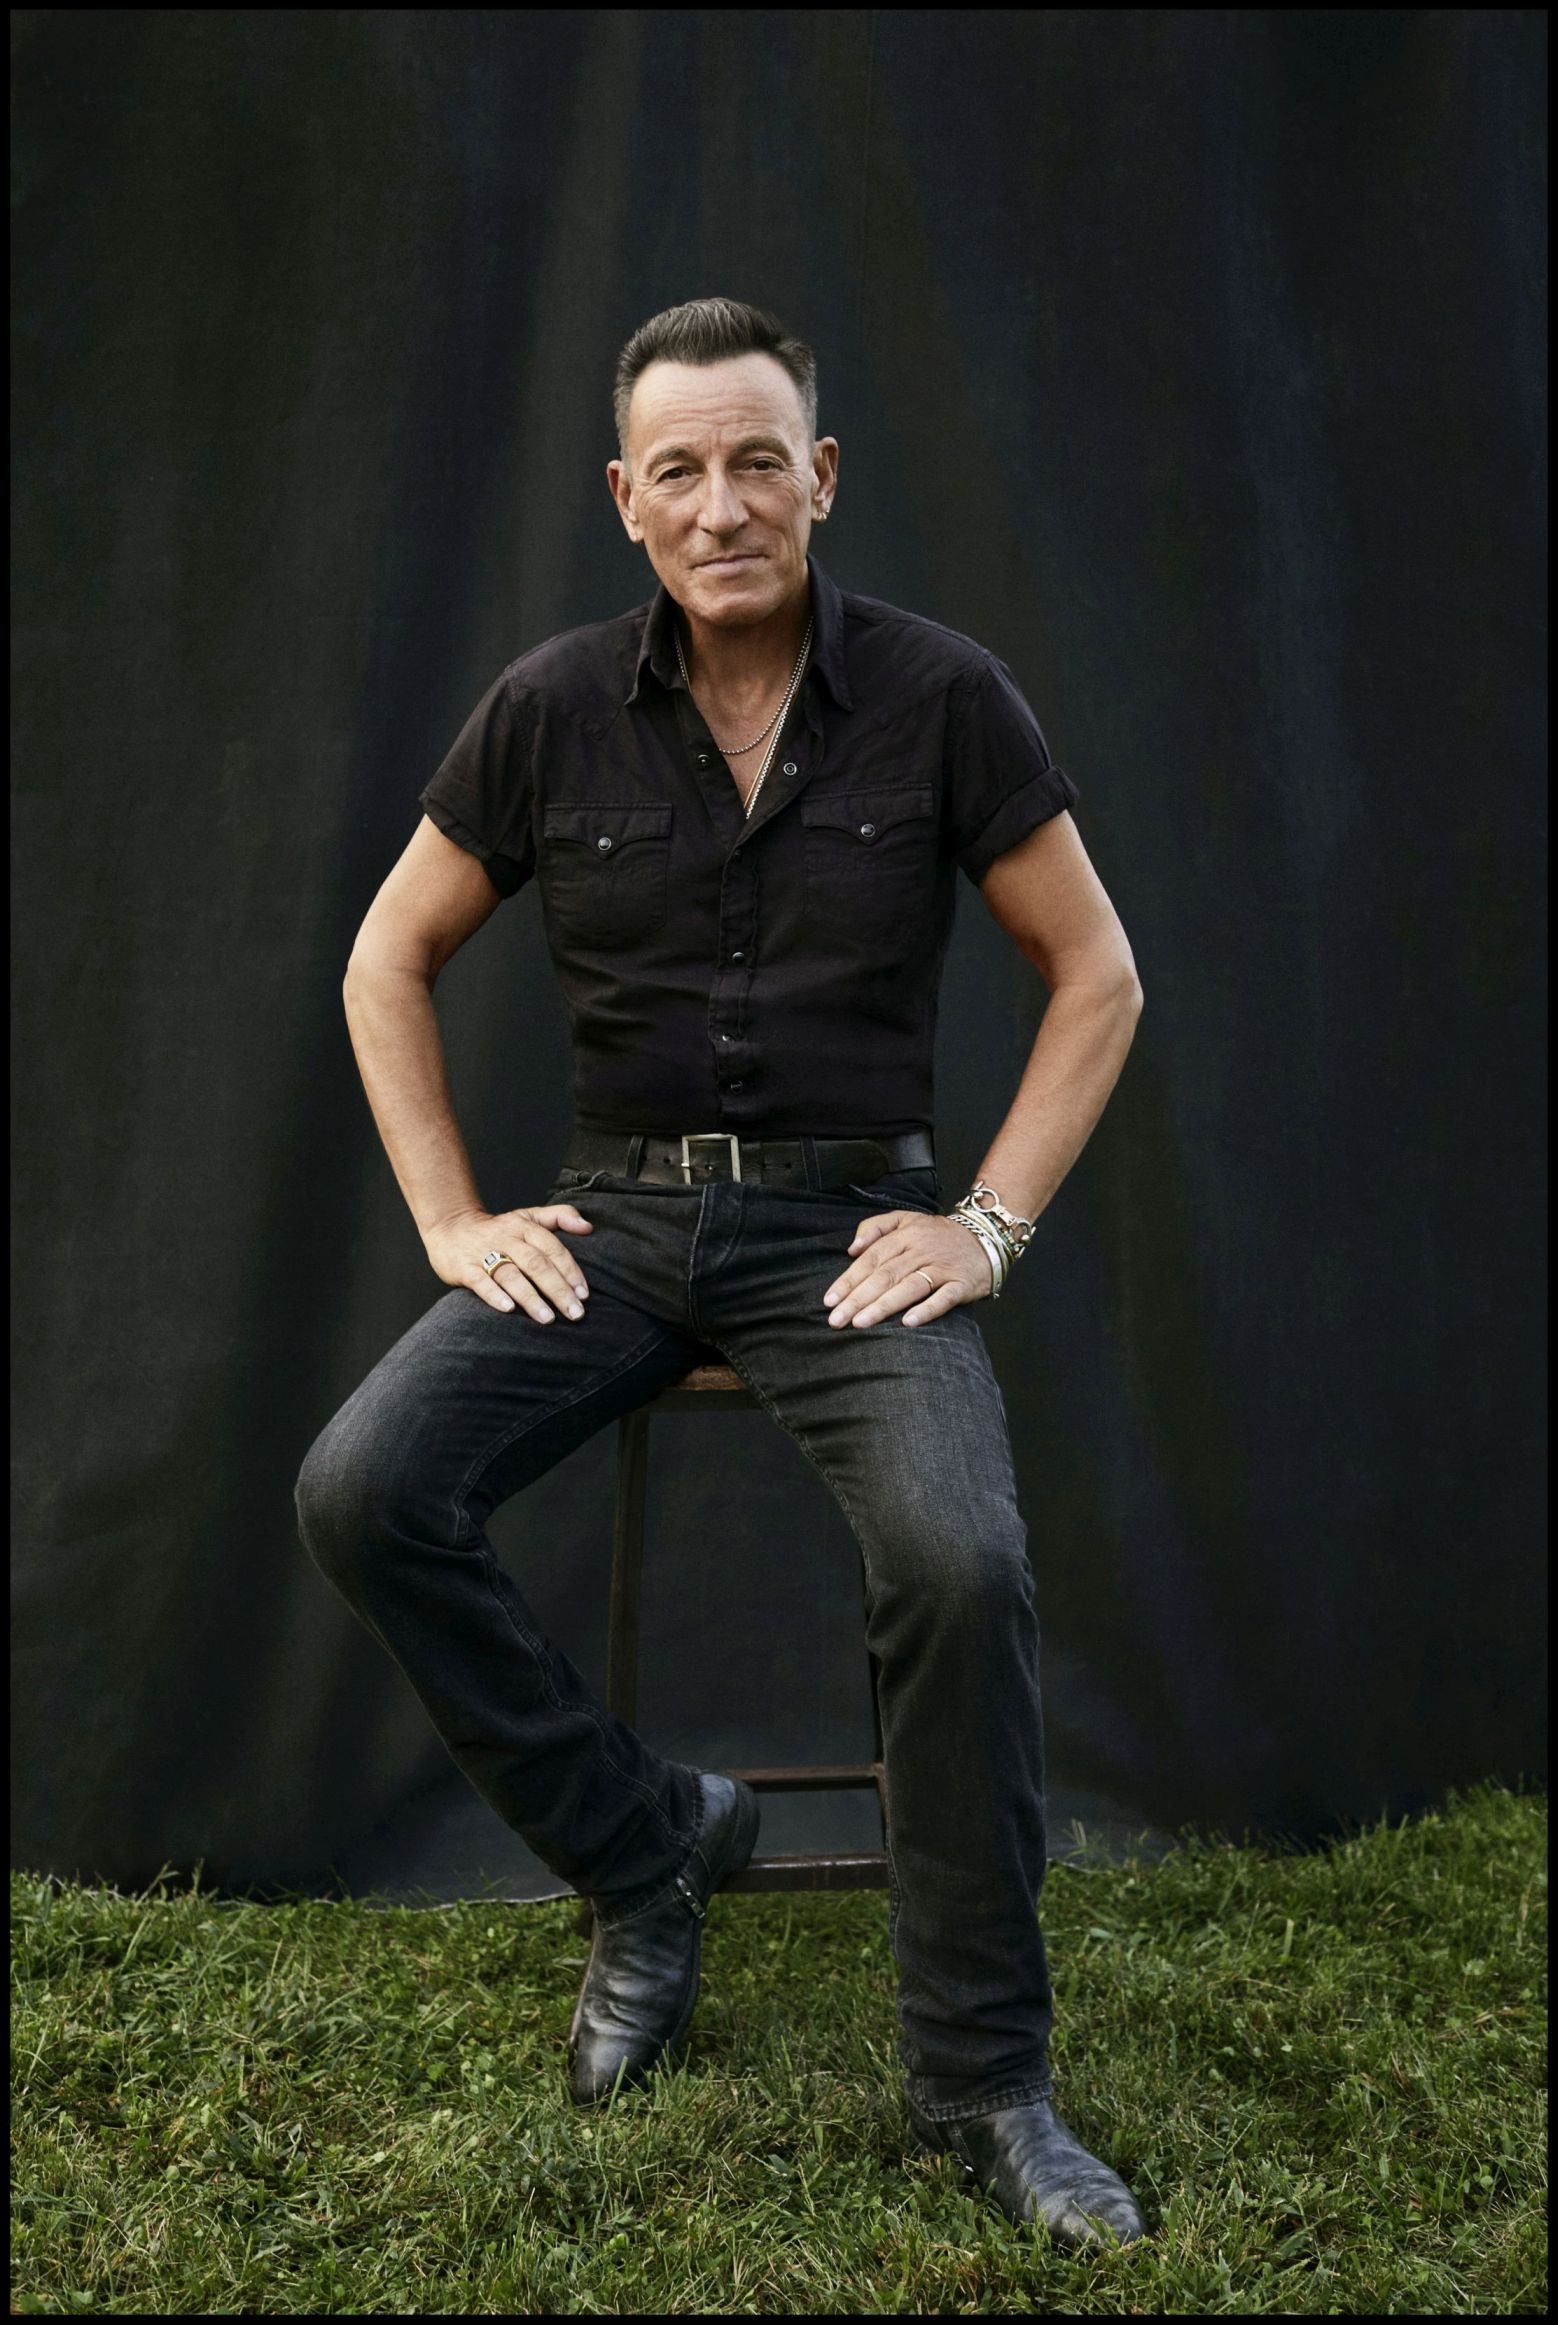 Bruce Springsteen album e tour - Immagini